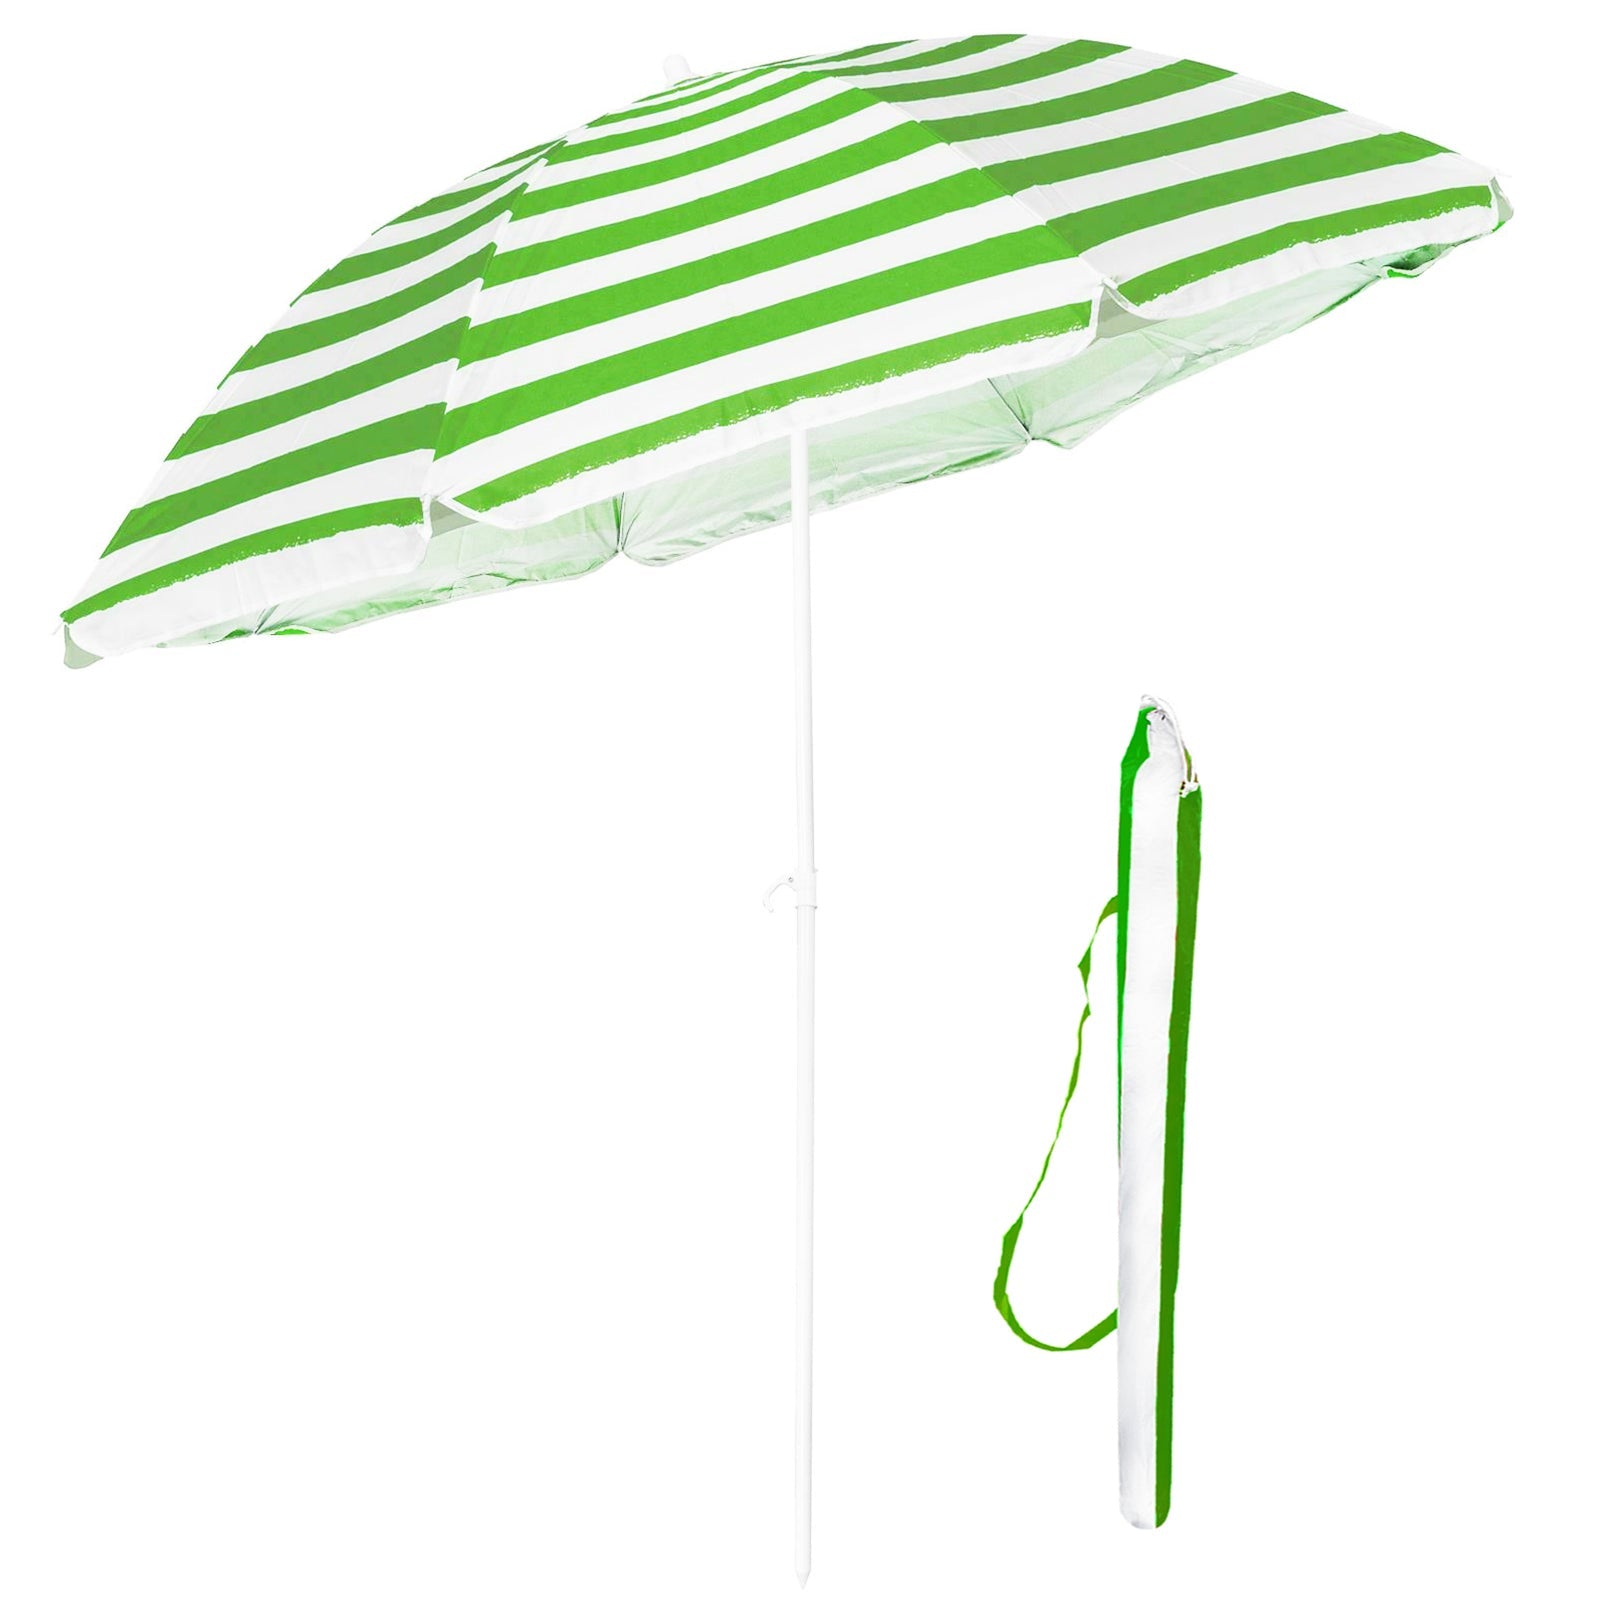 1.7M Garden Sun Umbrella Parasol